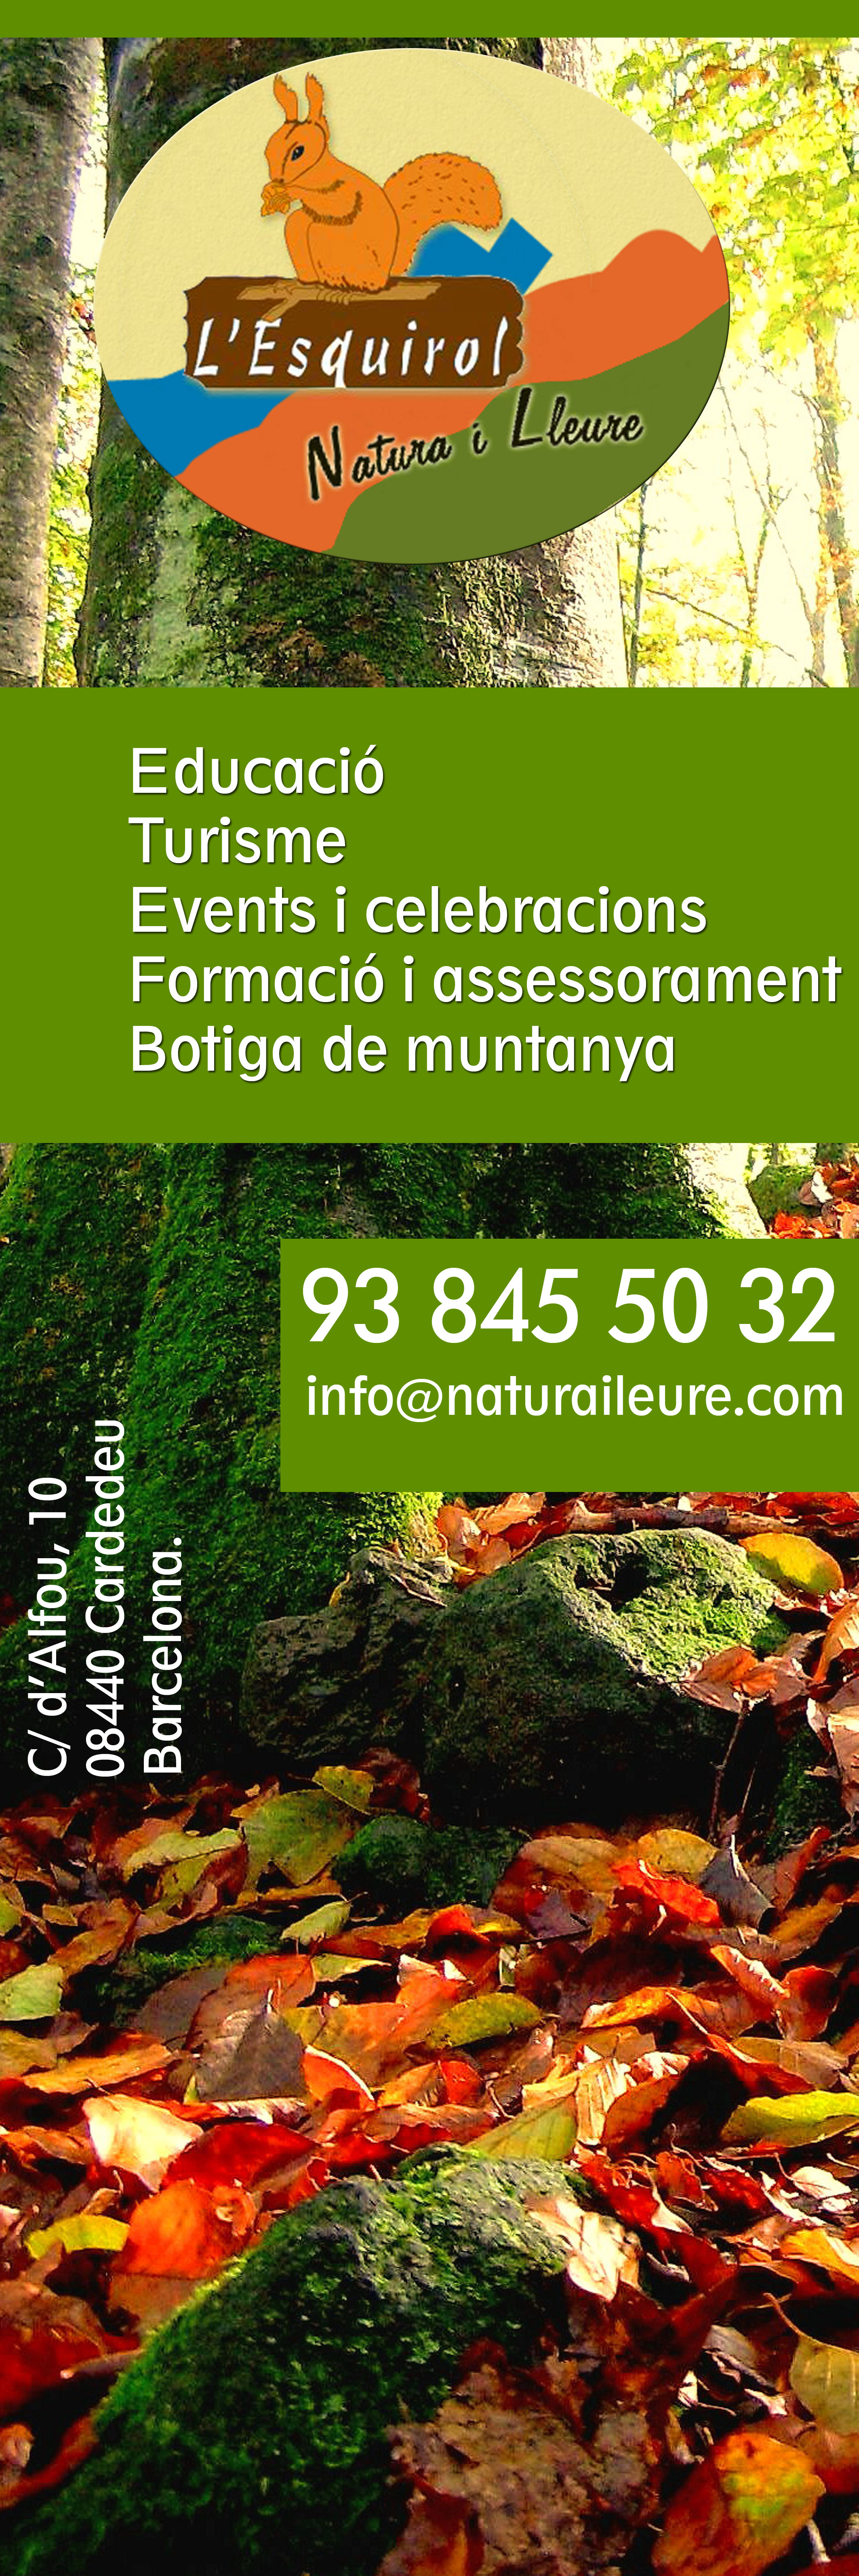 www.naturailleure.com